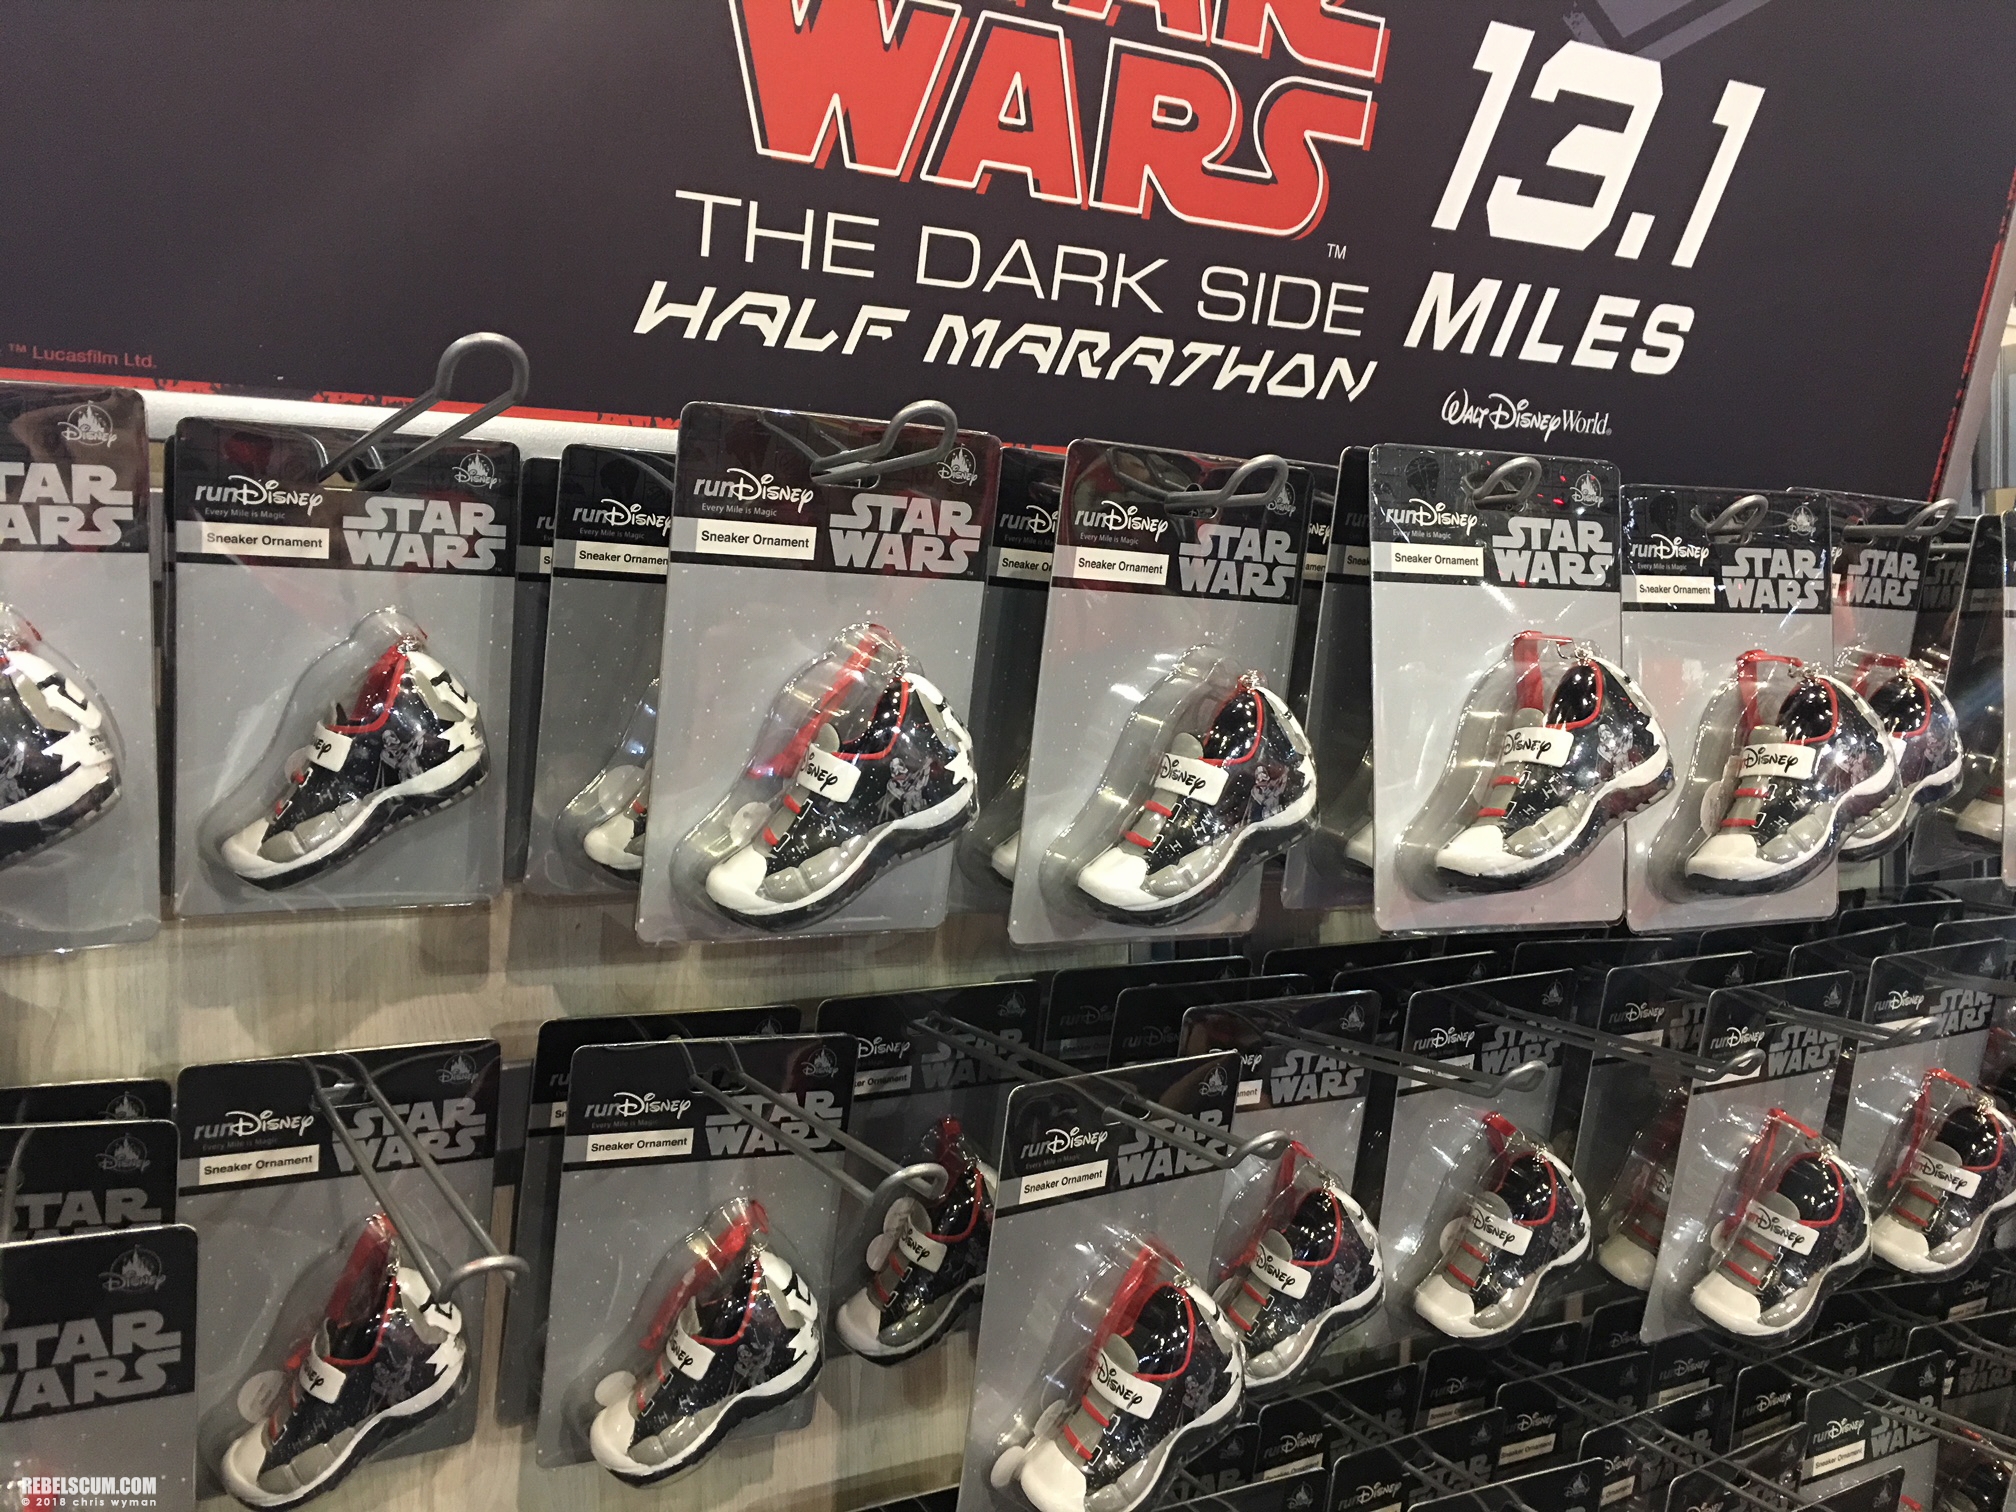 Star-Wars-Half-Marathon-The-Dark-Side-exclusives-products-013.jpg